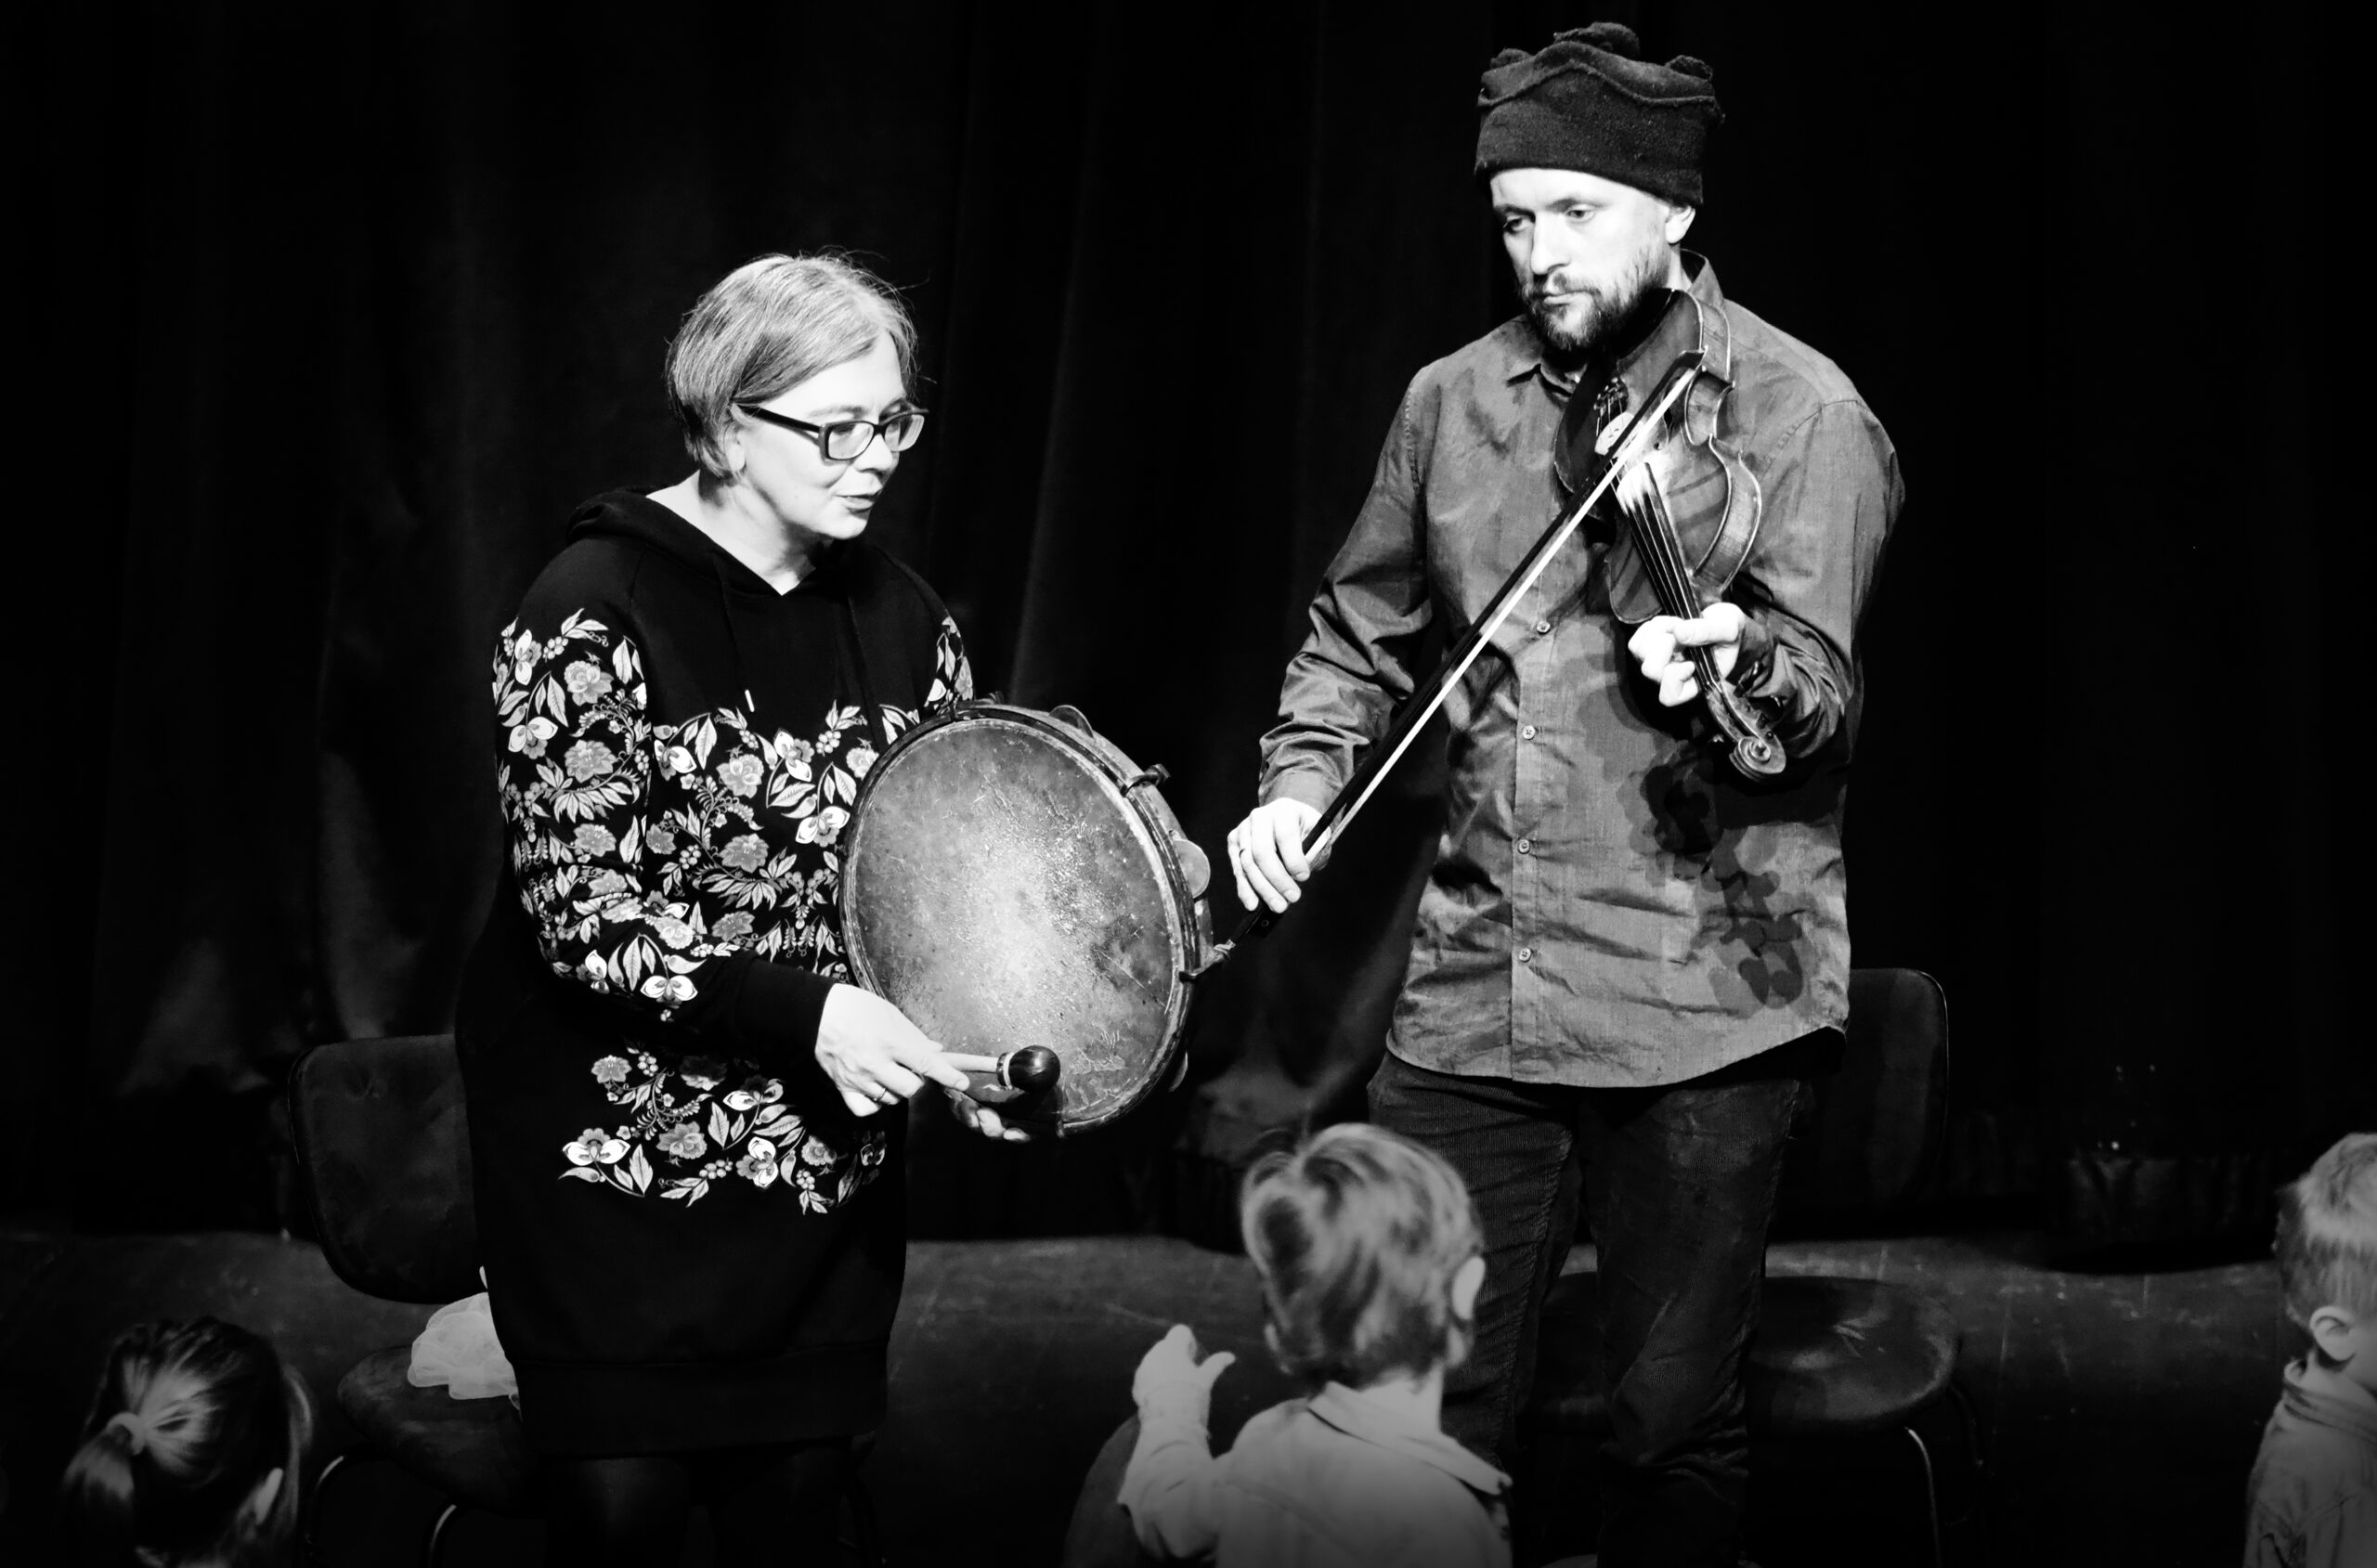 Czarno-biała fotografia kobiety i mężczyzny, którzy grają na bębenku i skrzypcach.